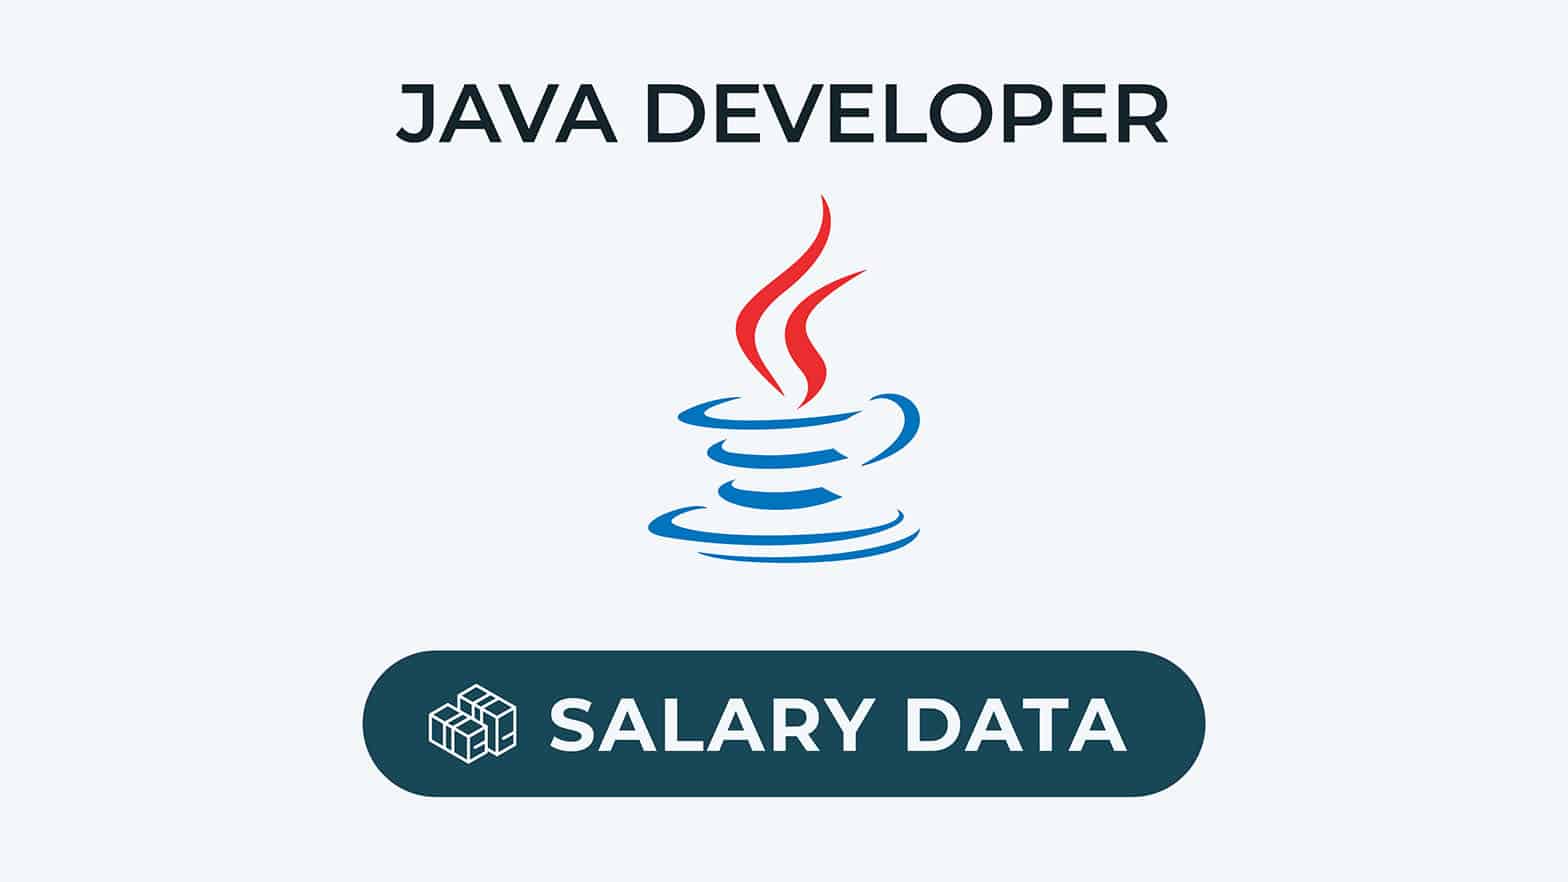 Java-ontwikkelaar salarisgegevens